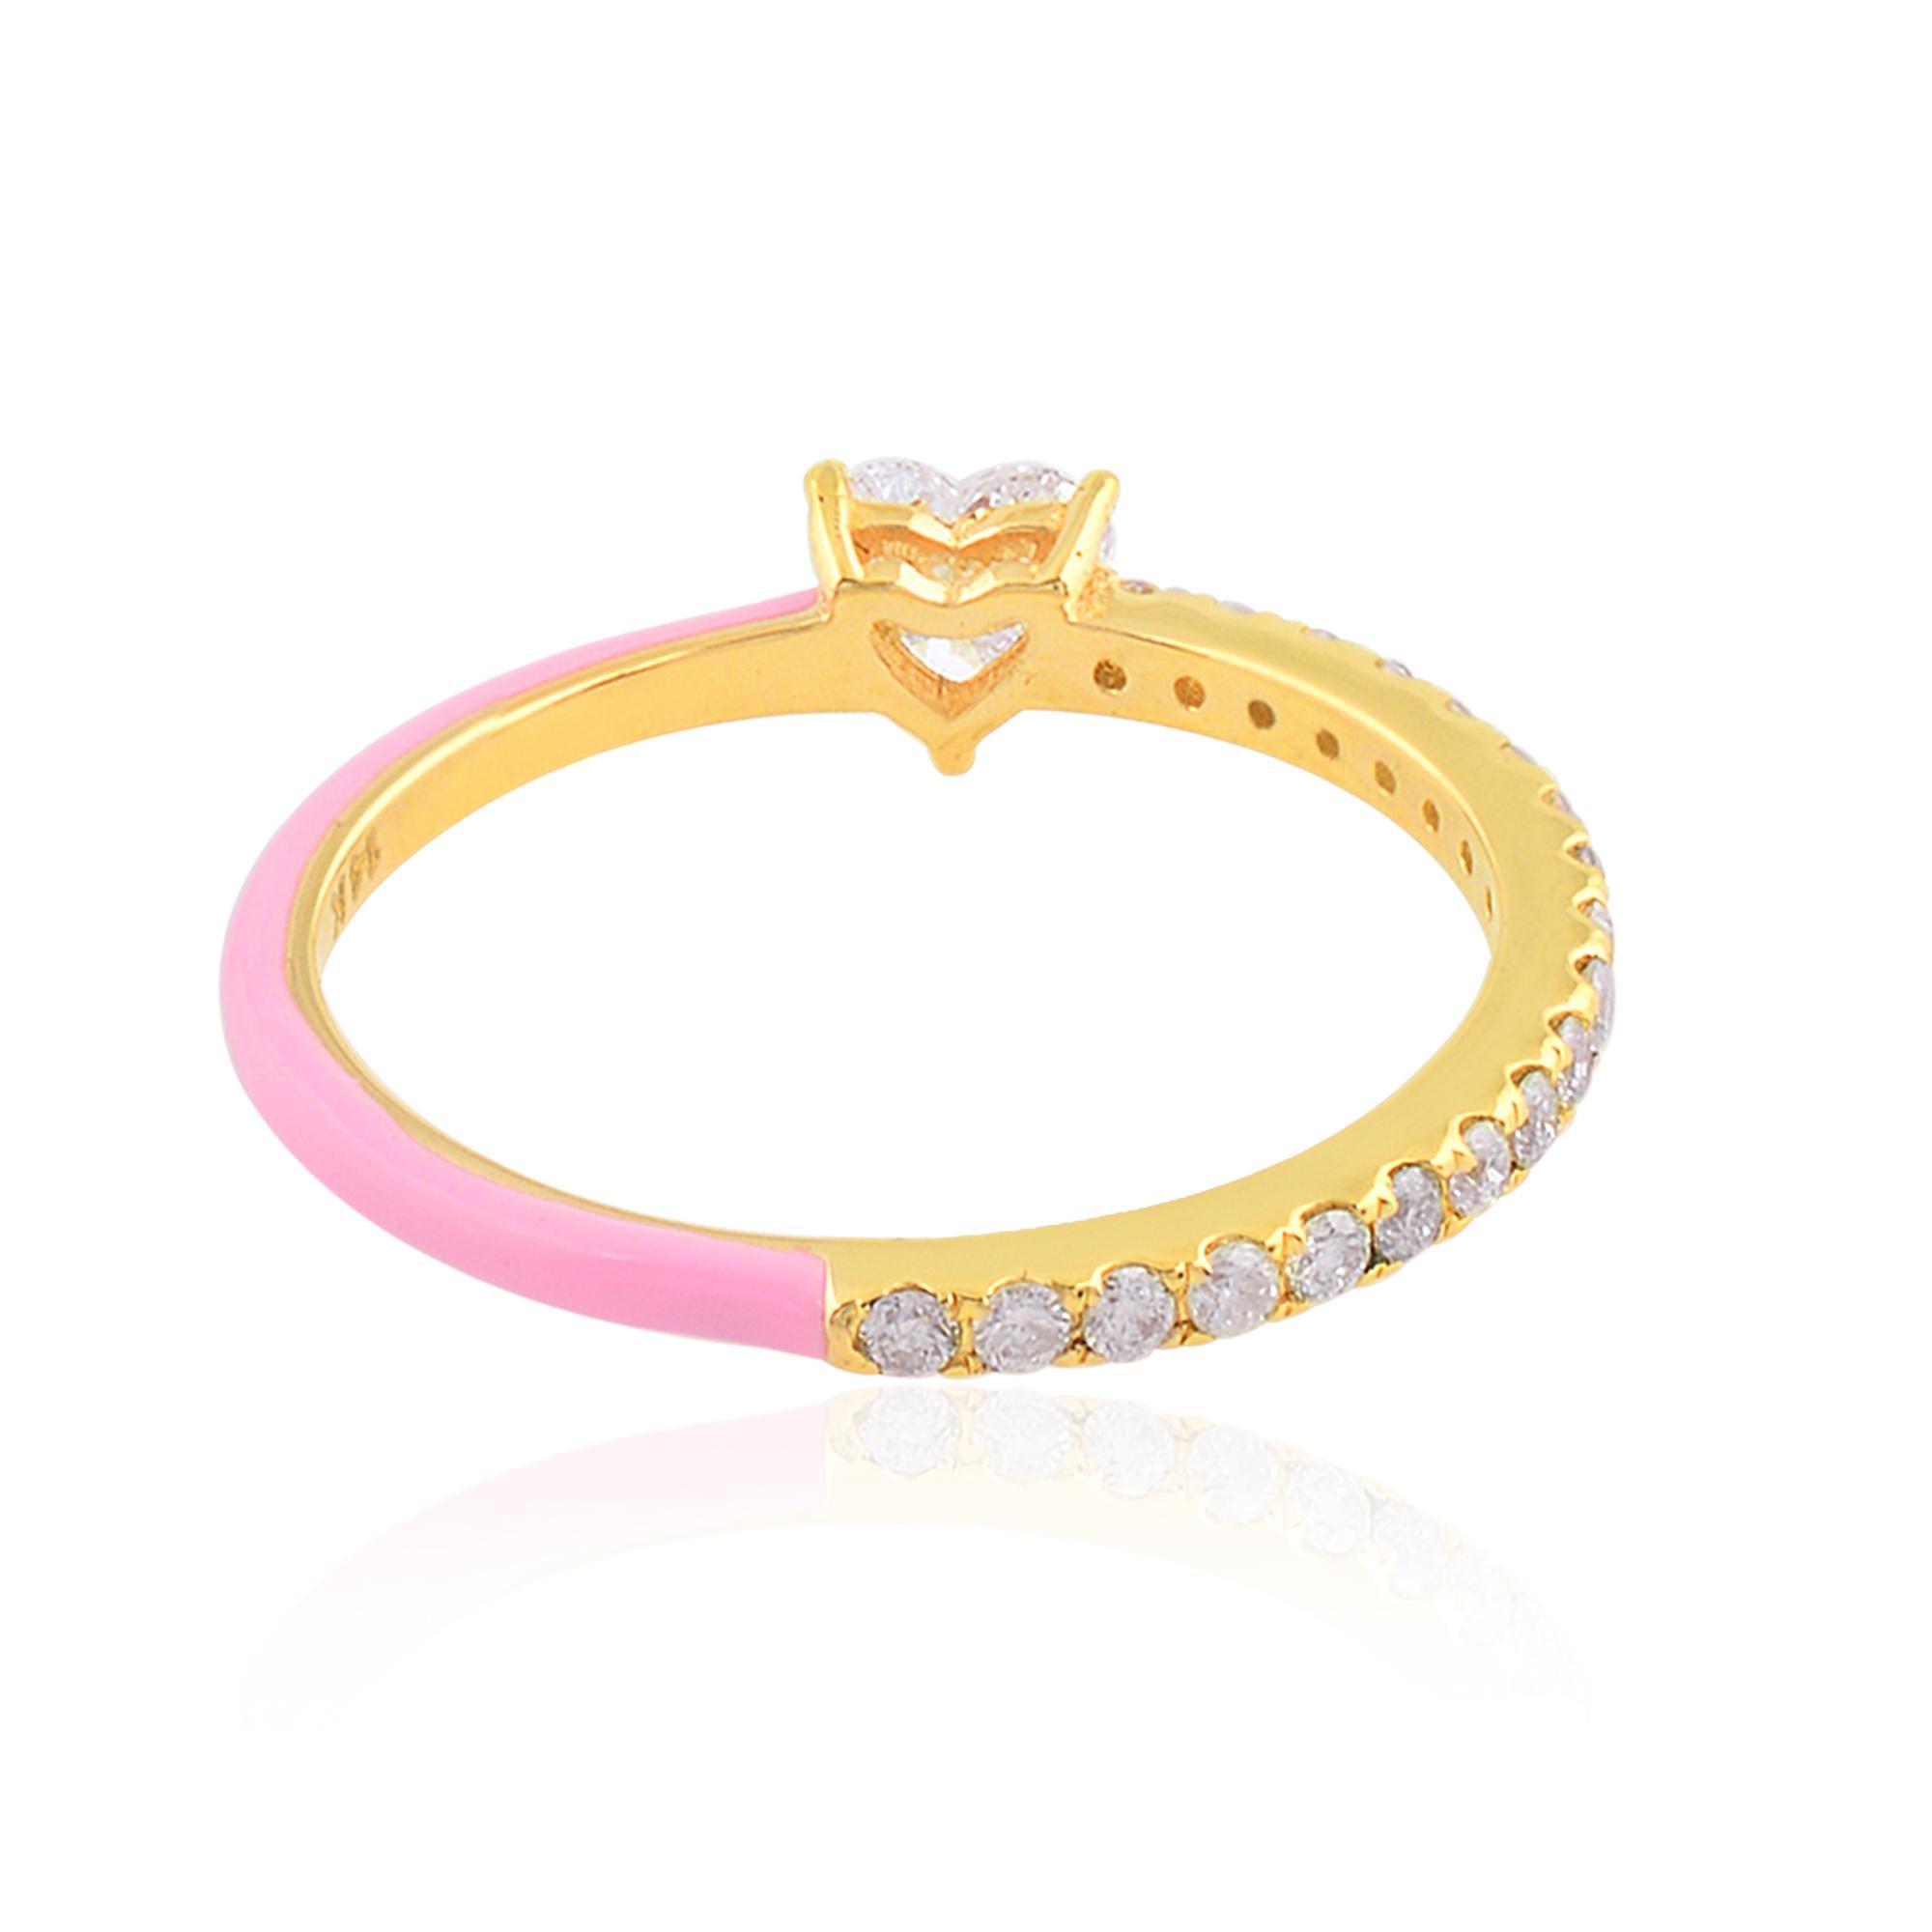 Artikel-Code :- SFR-2031
Bruttogewicht :- 1.37 gm
14k Gelbgold Gewicht :- 1,26 gm
Diamant Gewicht :- 0,55 Karat  ( DURCHSCHNITTLICHE DIAMANT-REINHEIT SI1-SI2 & FARBE H-I )
Ring Größe :- 7 US & Alle Ringgröße verfügbar

✦